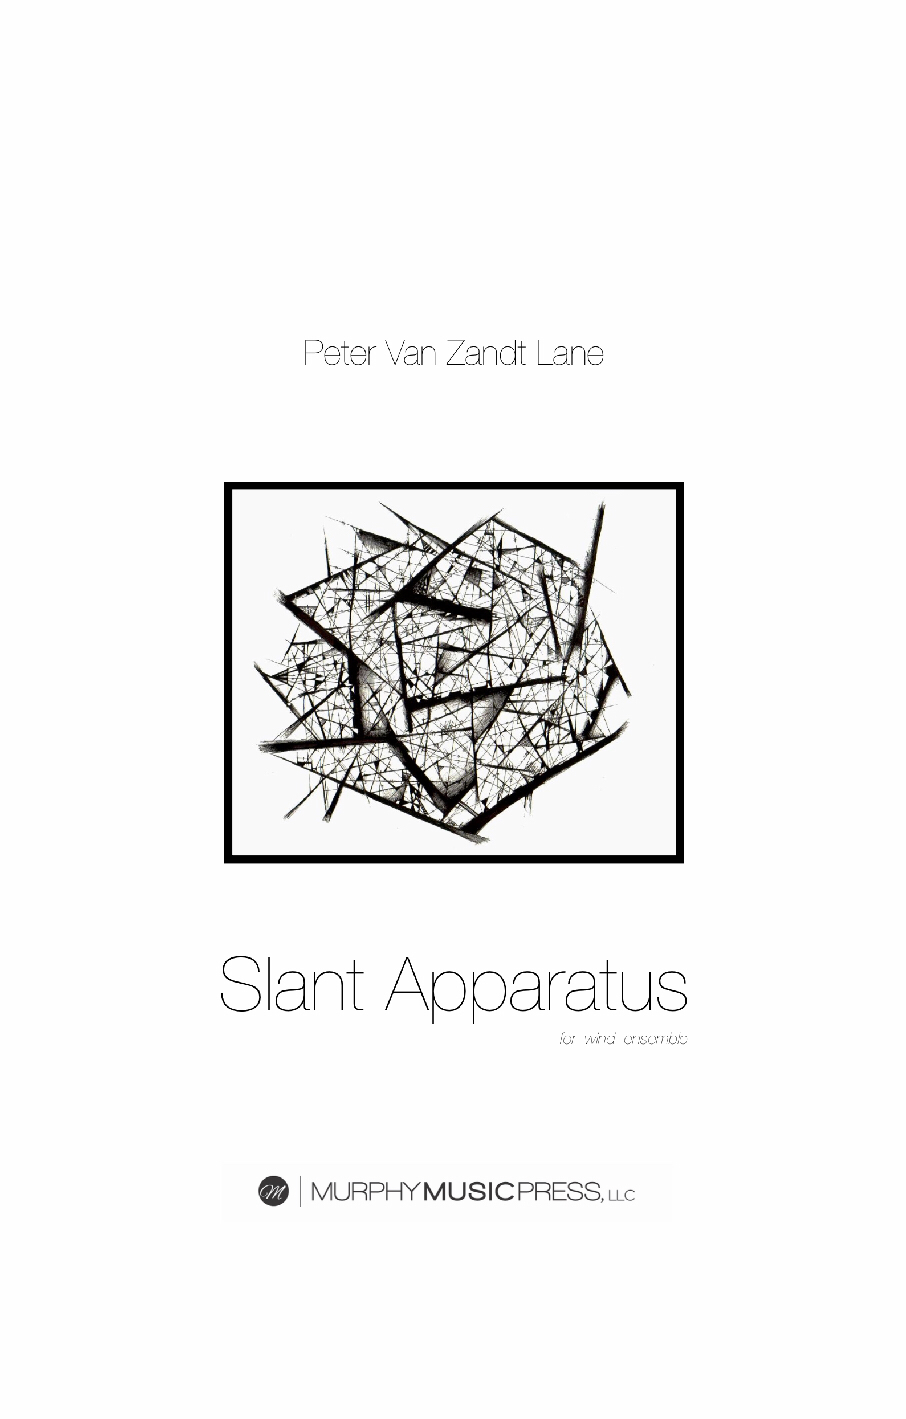 Slant Apparatus  by Pete Van Zandt Lane